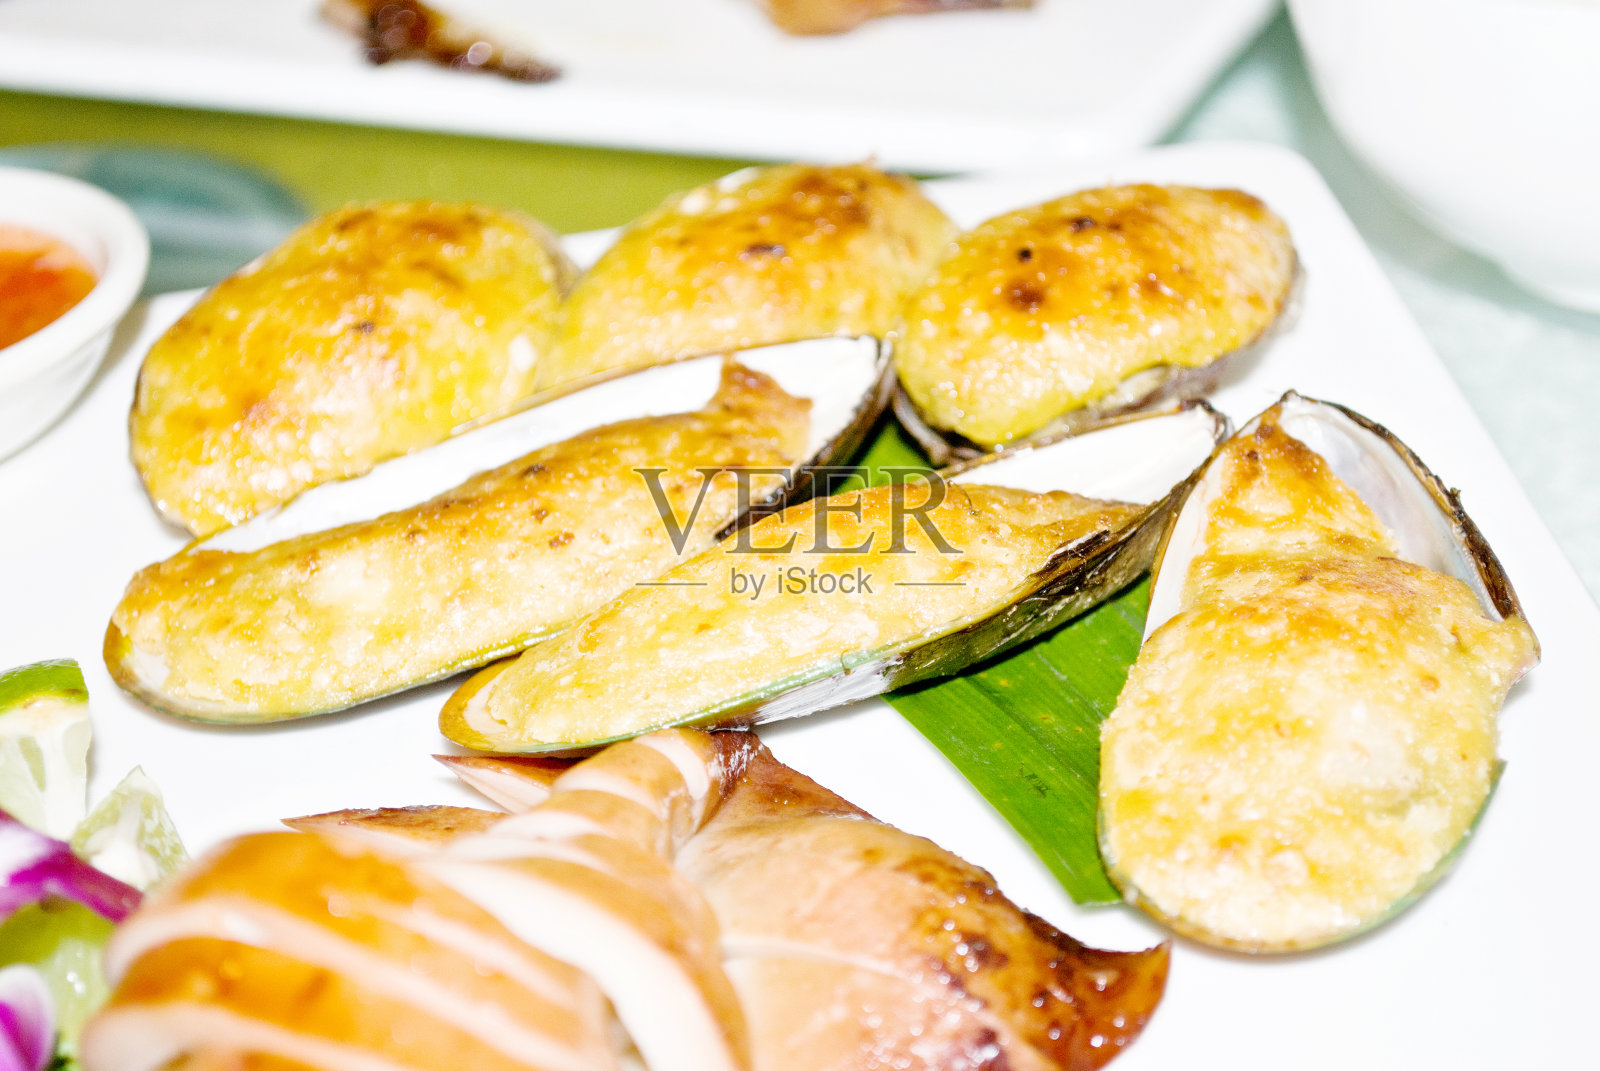 中国菜:烤蛤蜊(贻贝)和章鱼片照片摄影图片